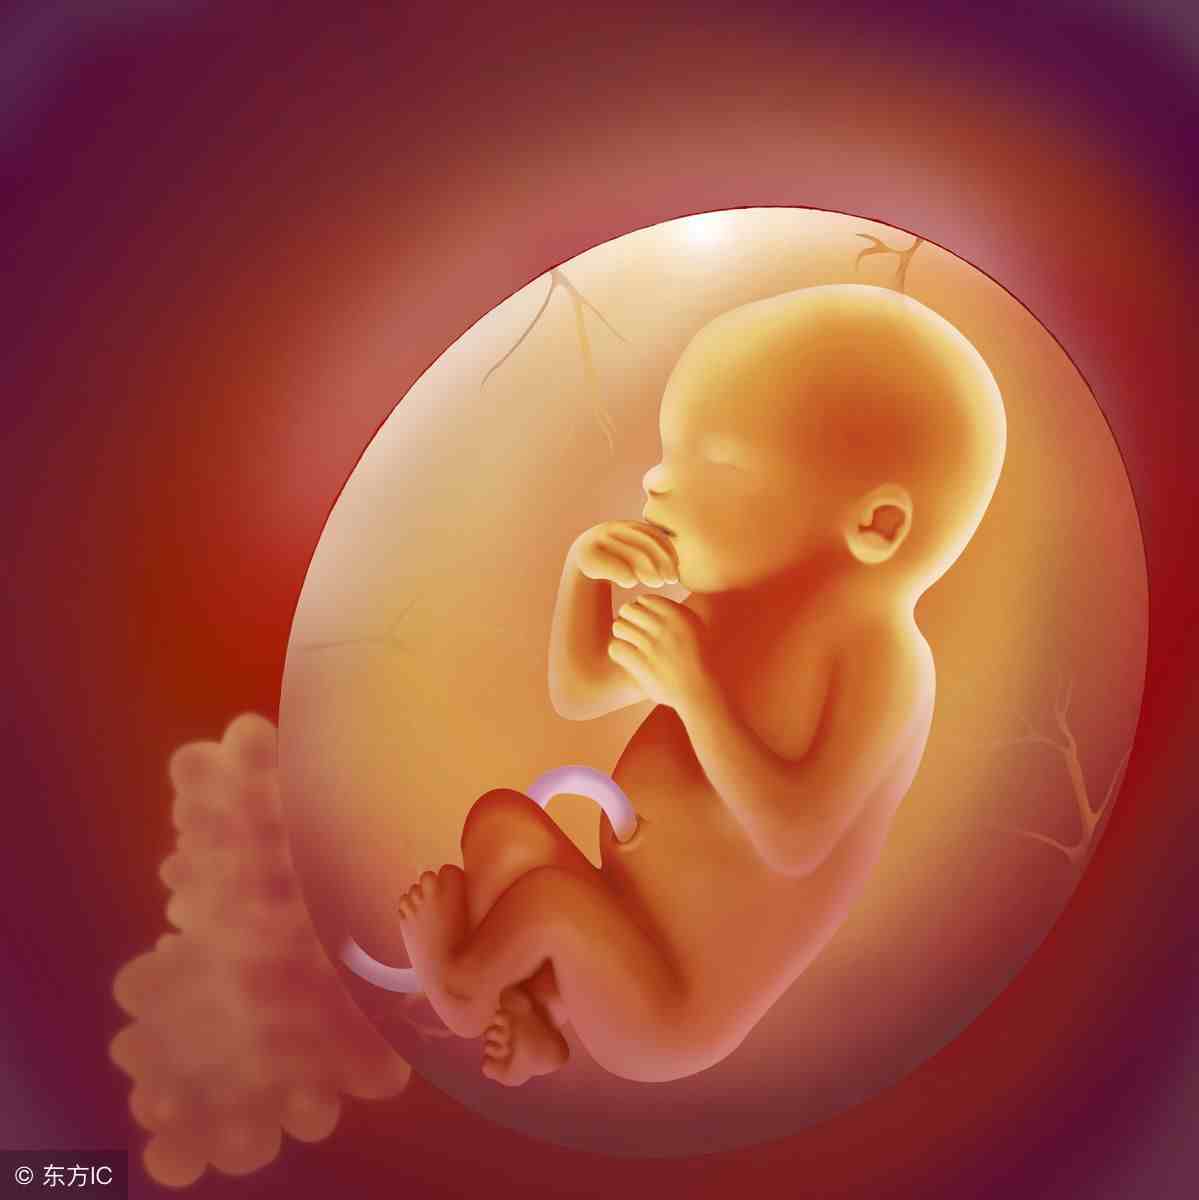 6个月的胎儿长什么样子？准妈妈身体有什么变化？看后觉得好神奇